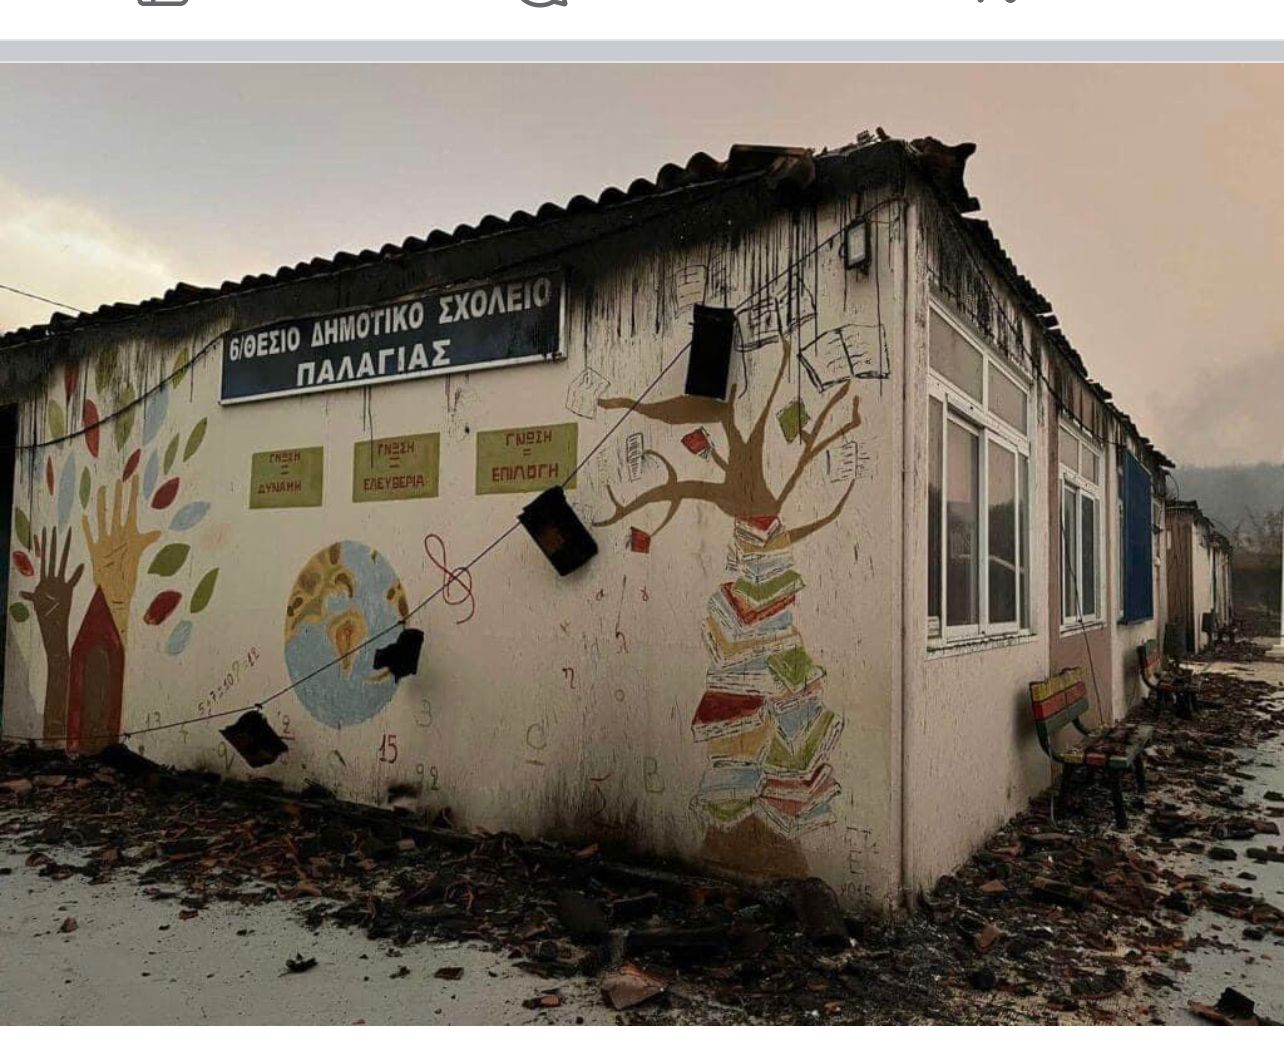 ΔΕΠΑ Εμπορίας: Αποκαθιστά τις ζημιές του δημοτικού σχολείου Παλαγιάς από τις καταστροφικές φωτιές στον Έβρο